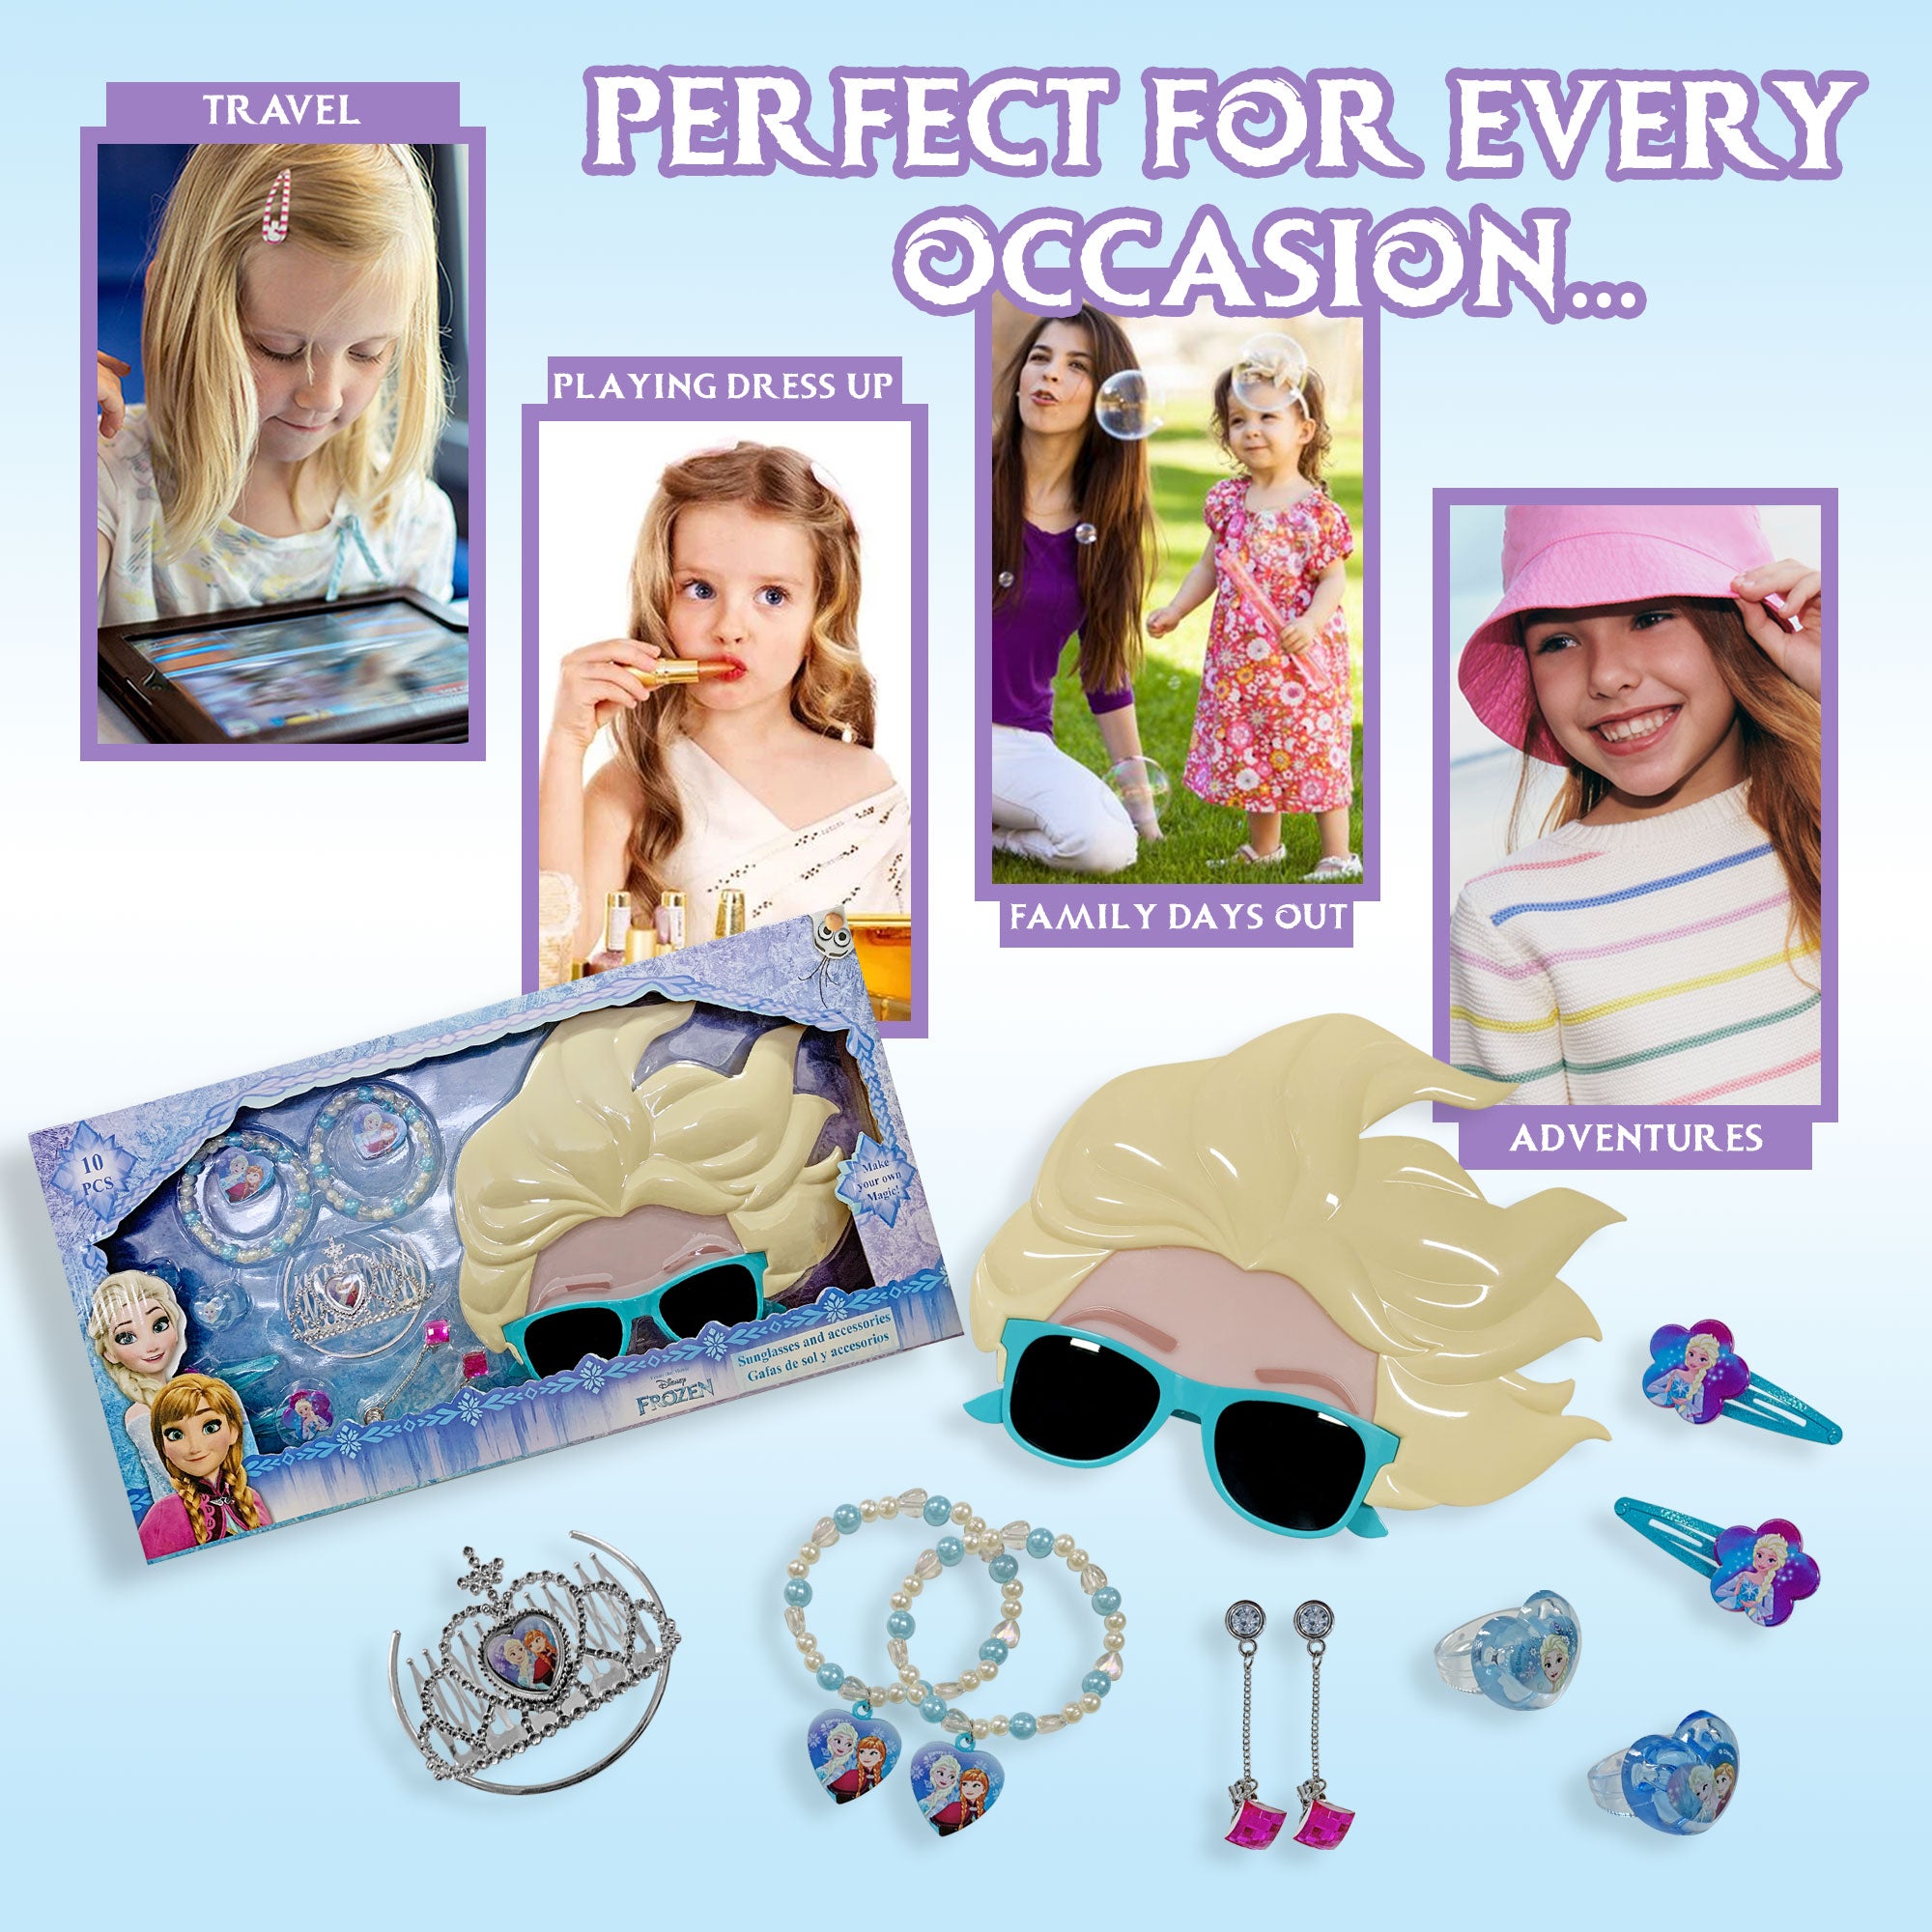 Kit gioielli Disney Frozen 10 pz occhiali accessori e braccialetti 2707